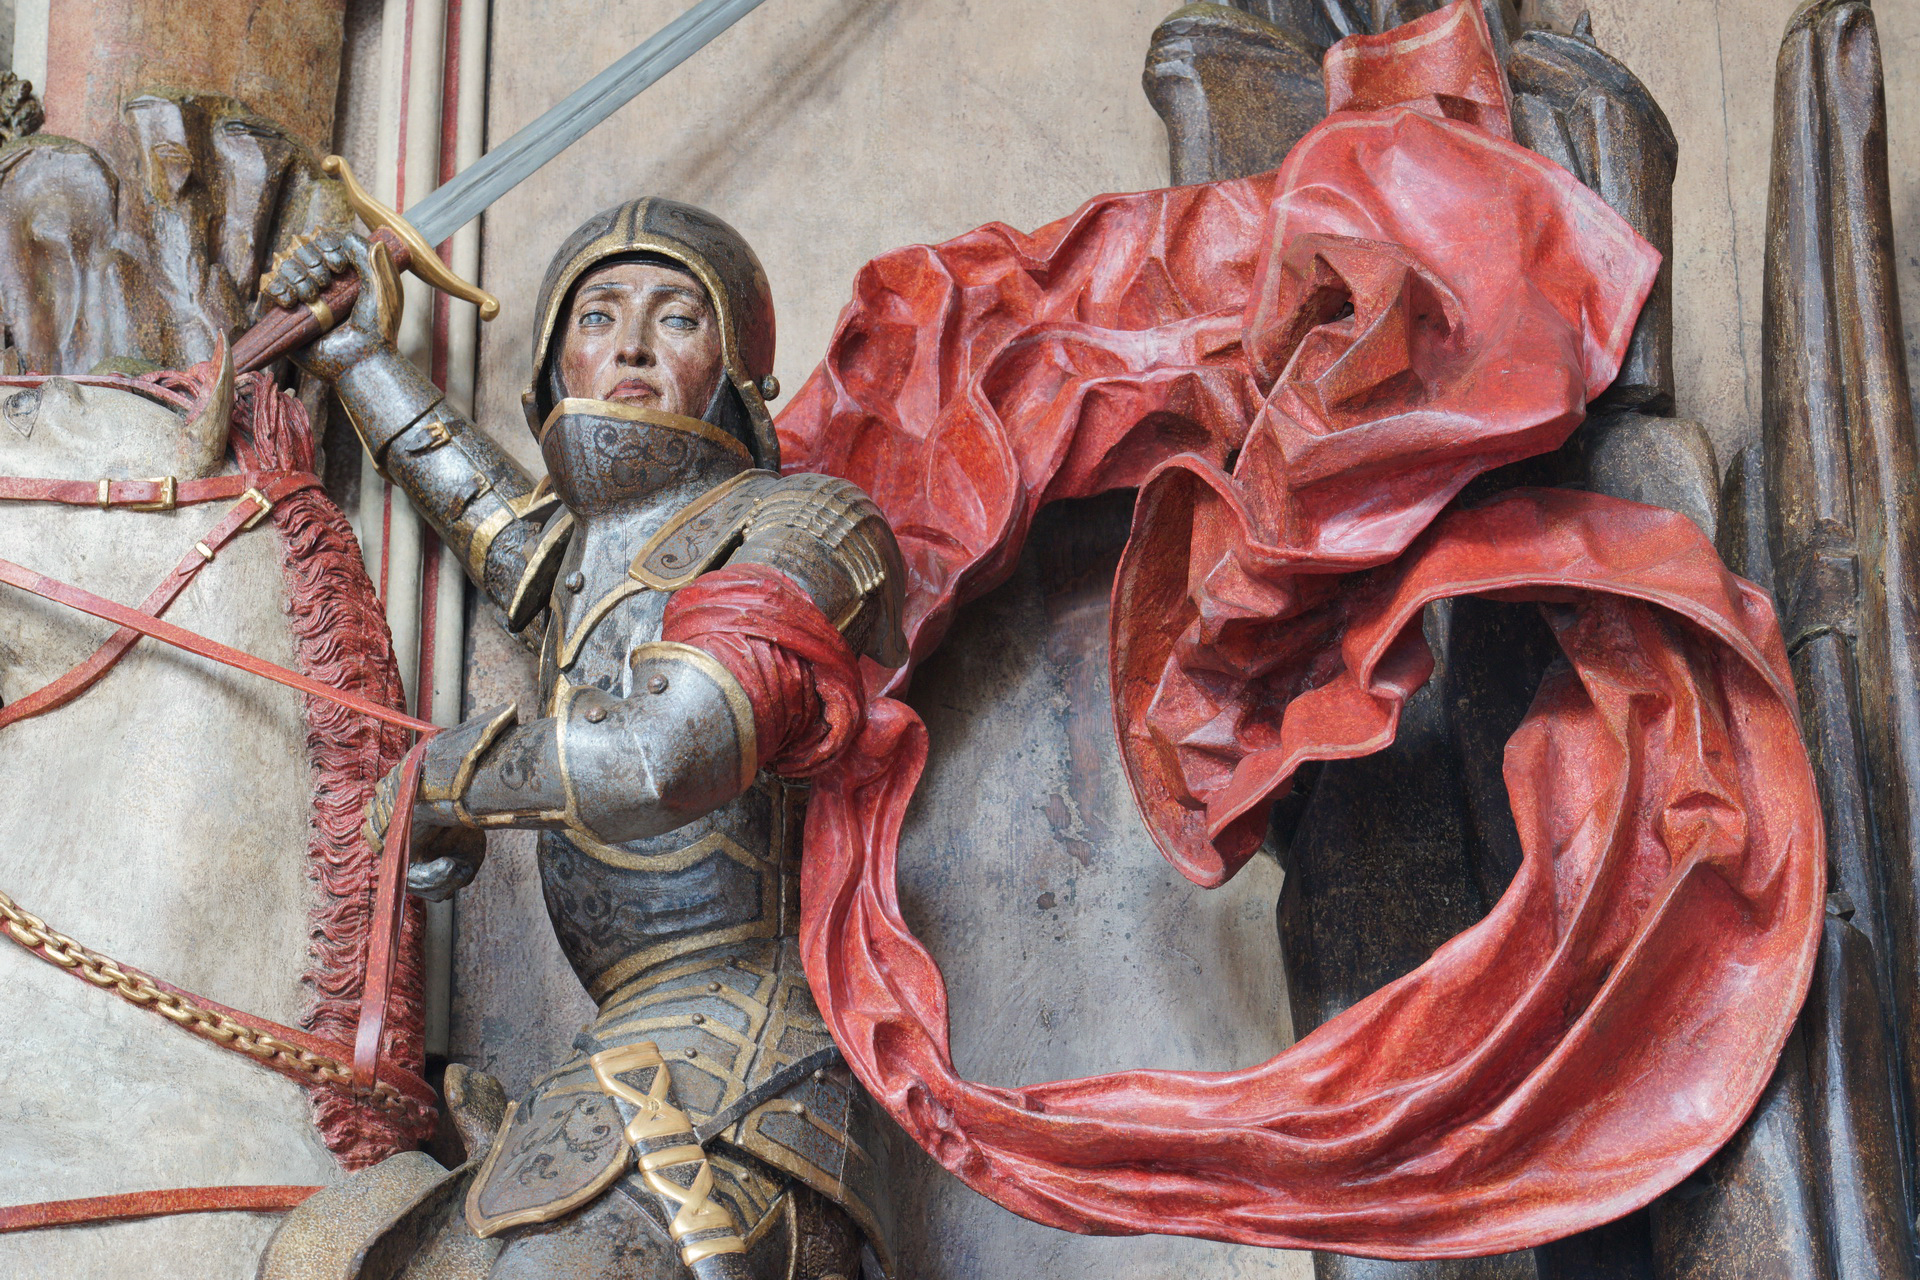 Rzeźba św. Jerzy walczący ze smokiem, fragment. Rycerz siedzi na koniu, ukazany do pasa. Prawą dłoń unosi w górę, trzyma w niej miecz. Ma na sobie zbroję, za nim powiewa czerwona tkanina.